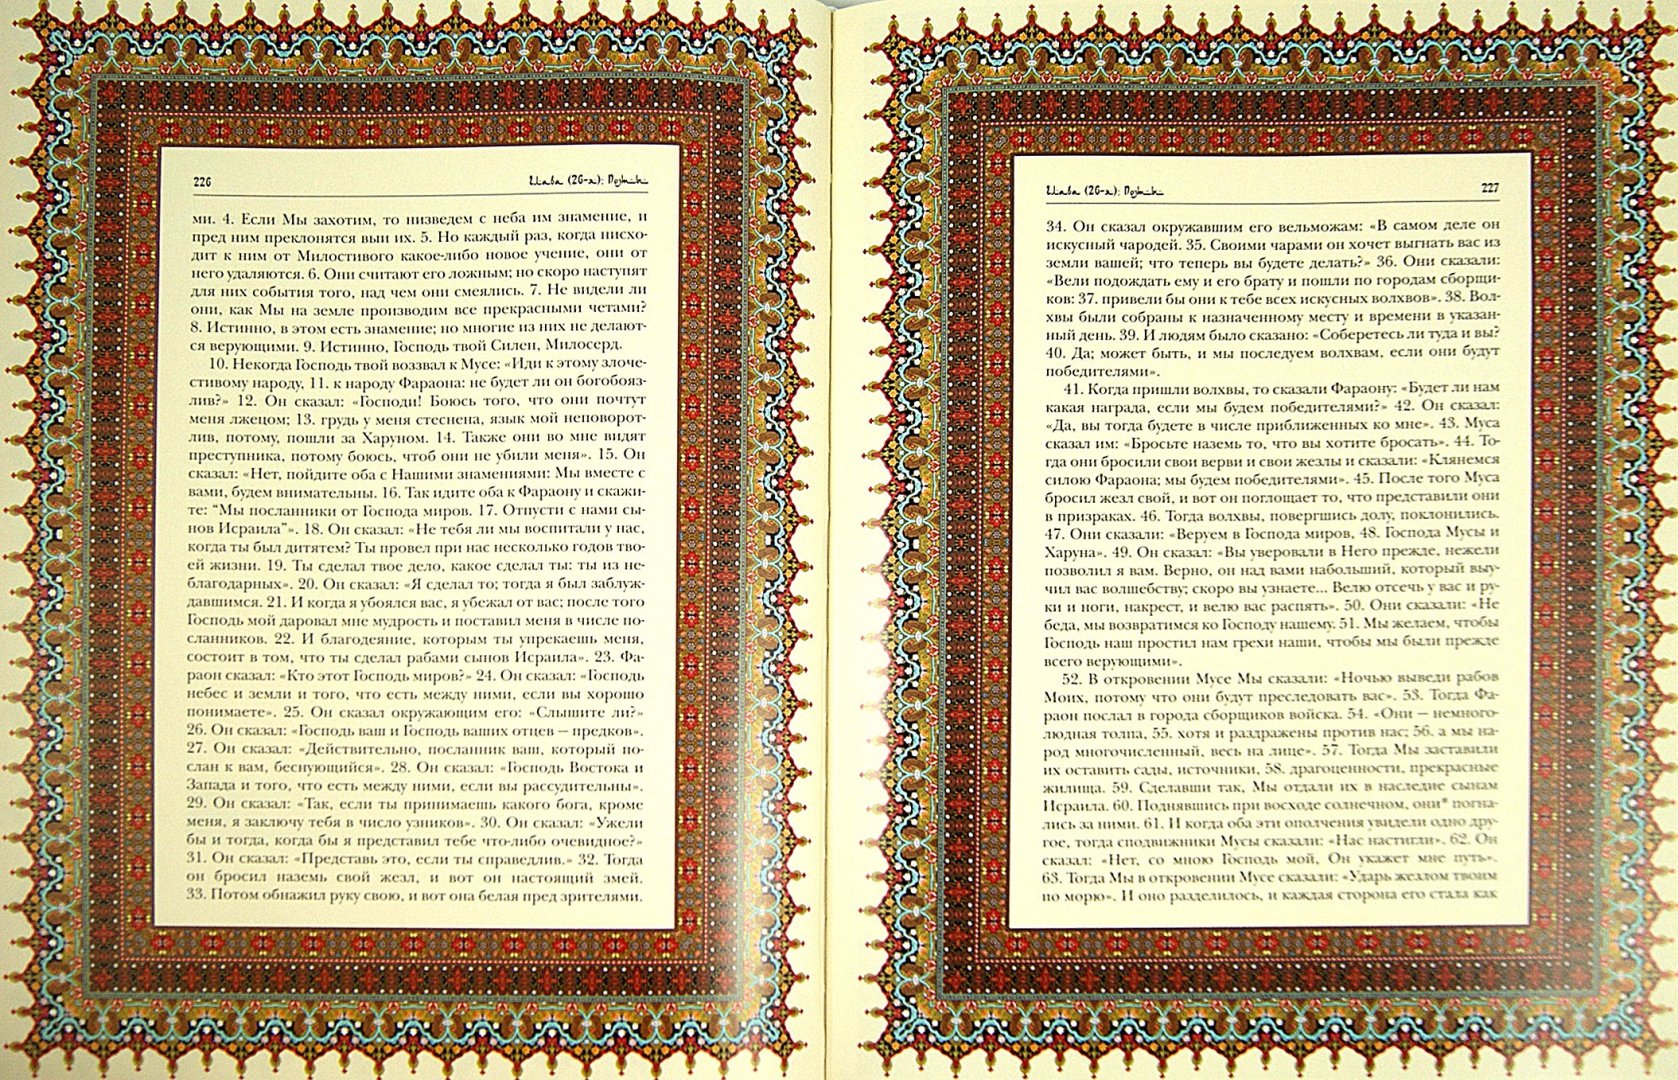 Иллюстрация 1 из 7 для Священный Коран | Лабиринт - книги. Источник: Лабиринт